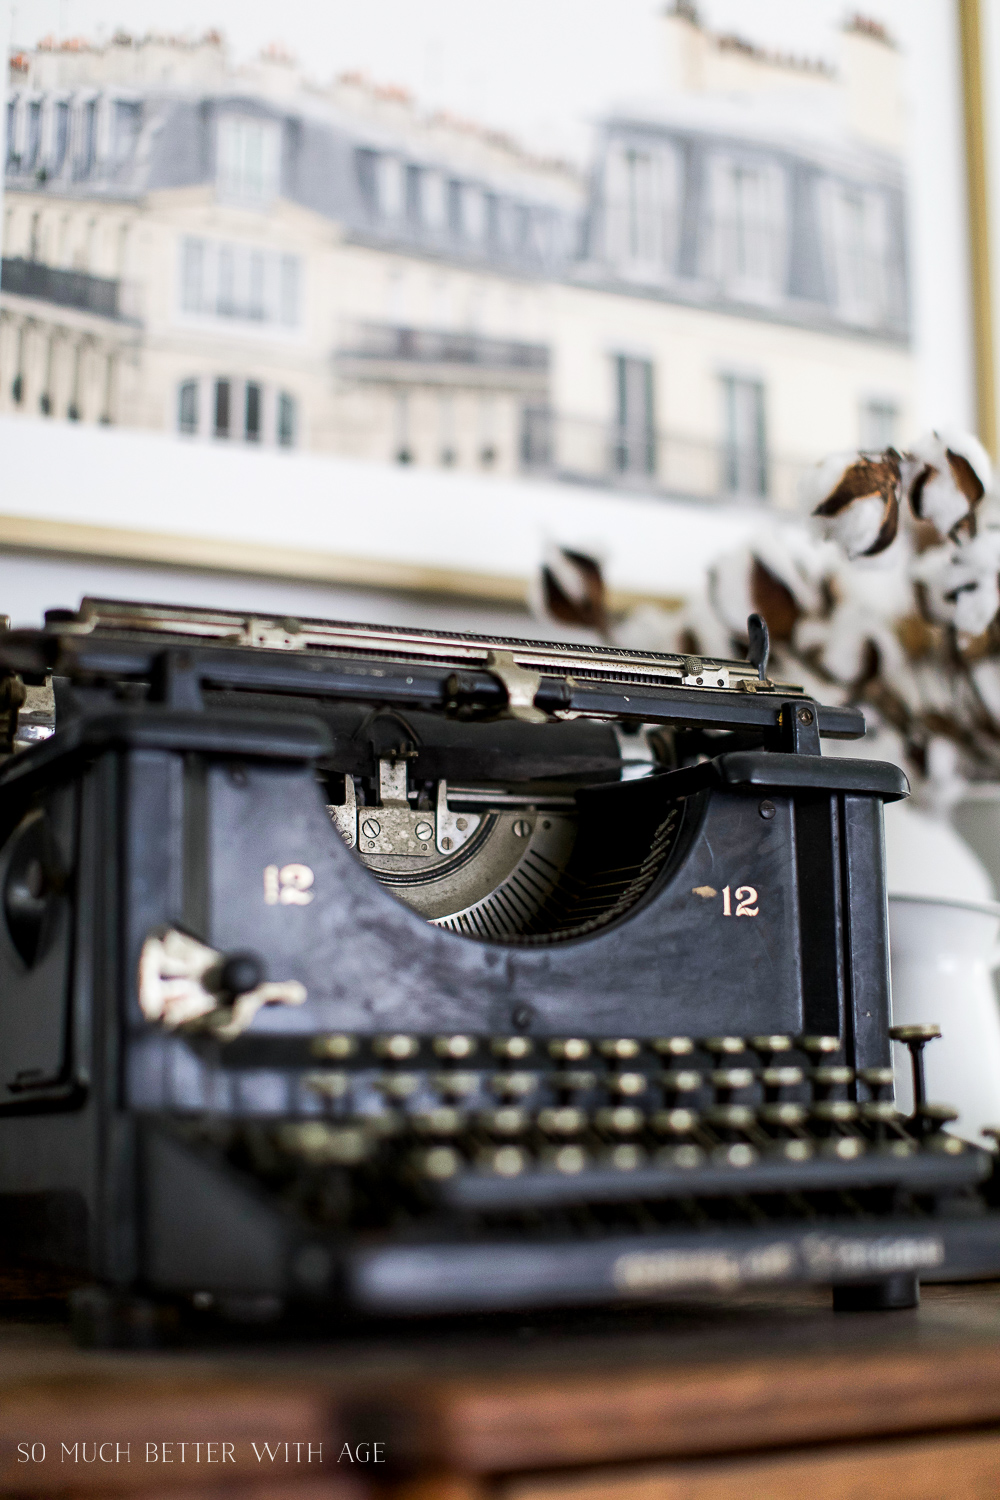 Up close shot of the black vintage typewriter.